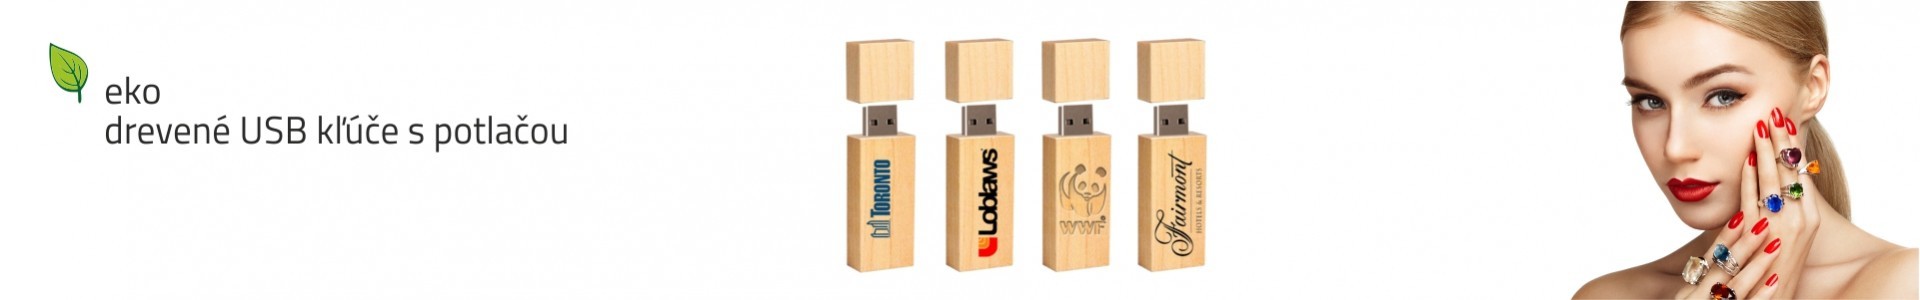 Ekologické reklamné predmety + drevené USB kľúče USB506